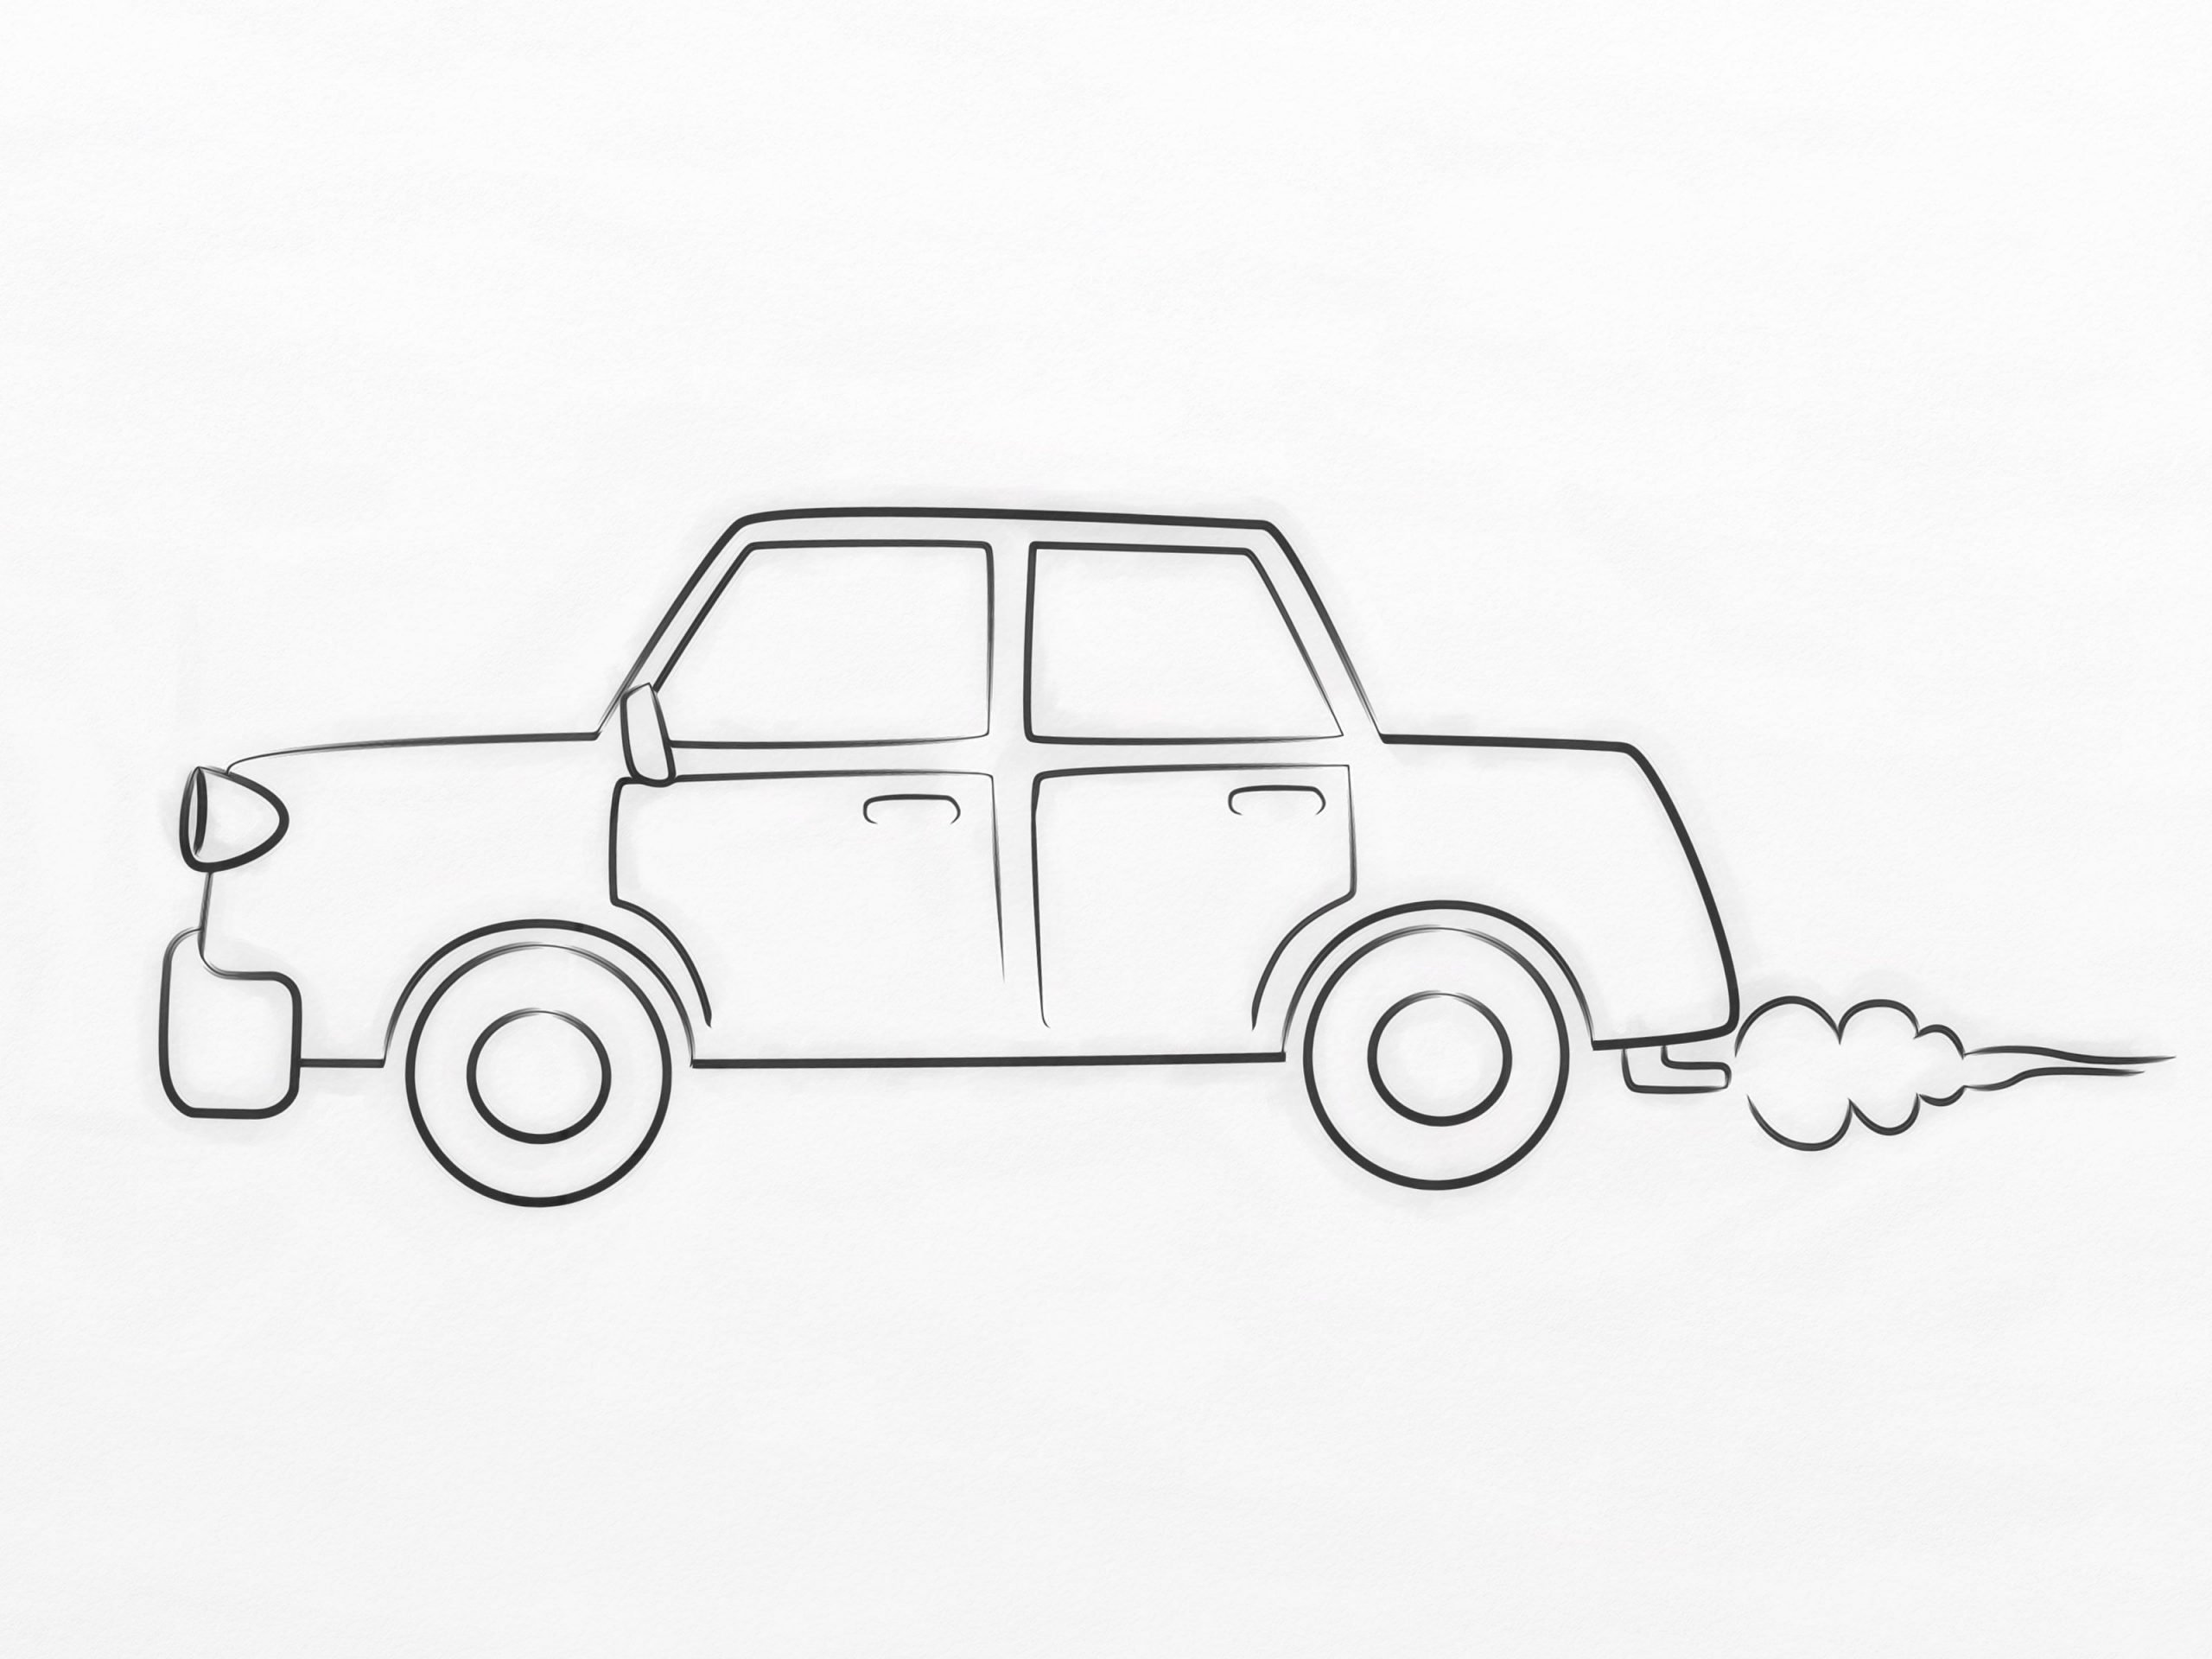 Best Simple Car Drawings Ideas